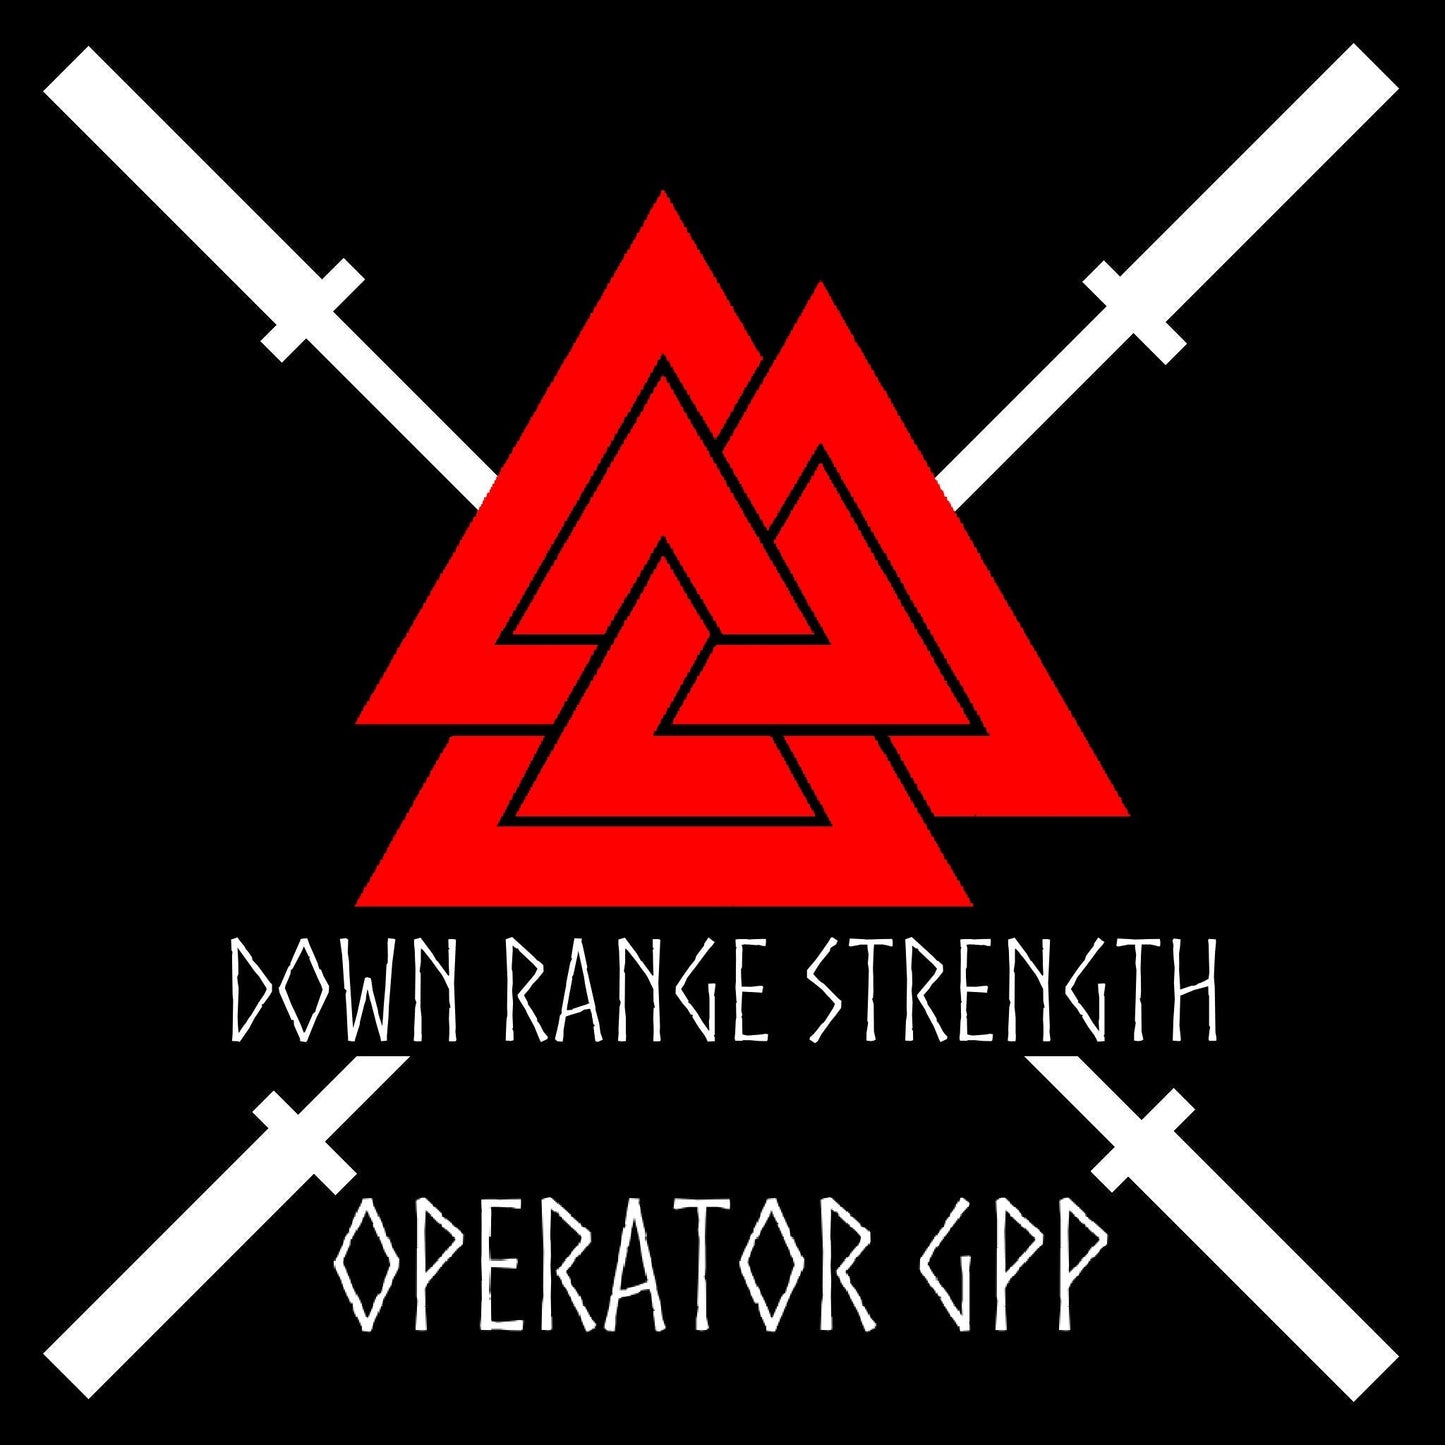 Operators GPP 12 Weeks